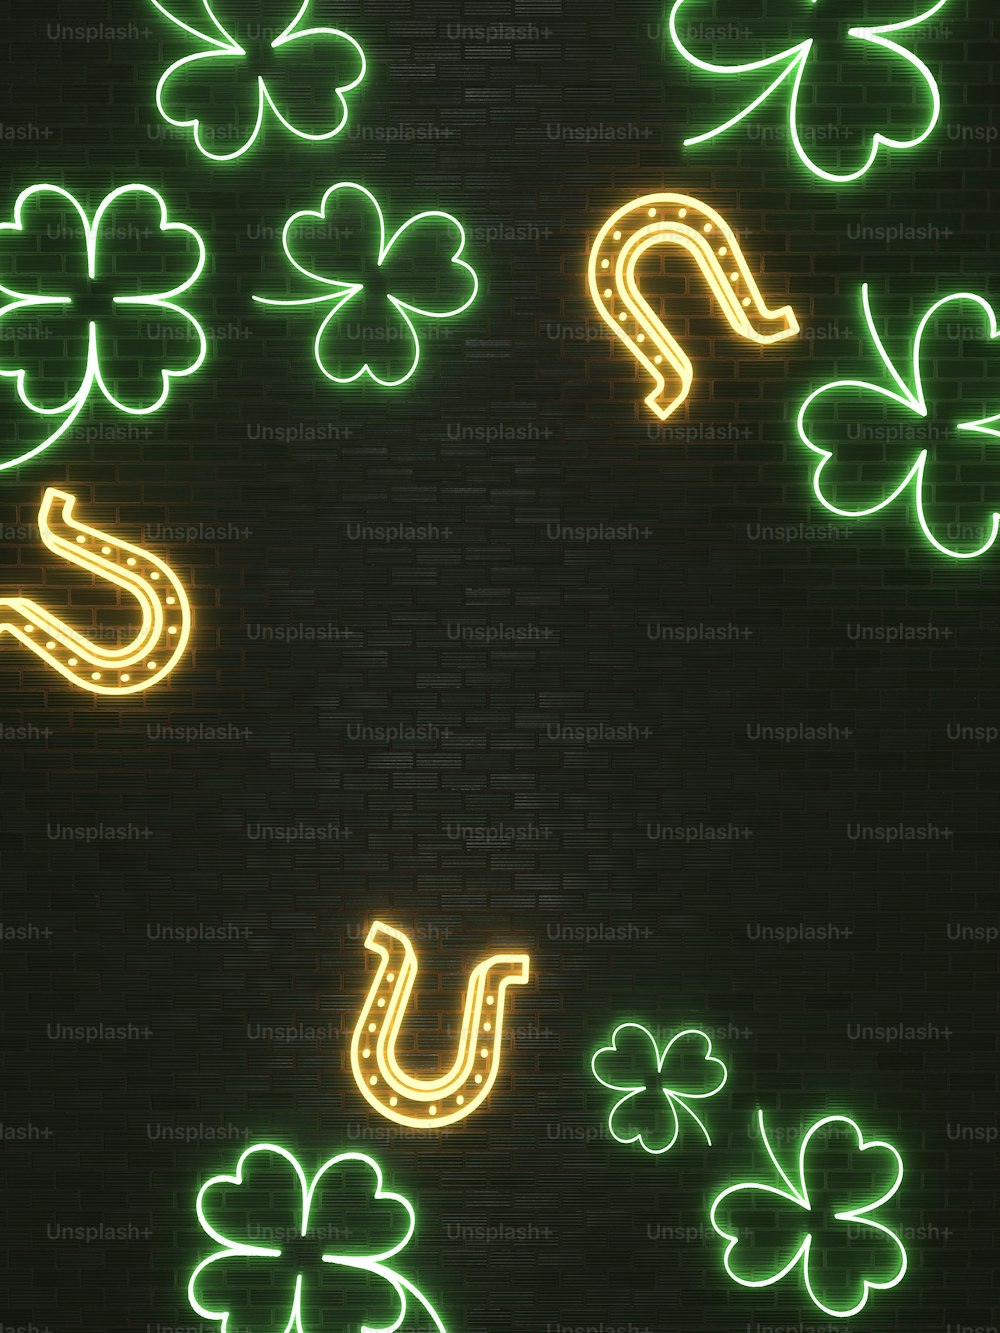 Un letrero de neón verde y amarillo en una pared de ladrillos